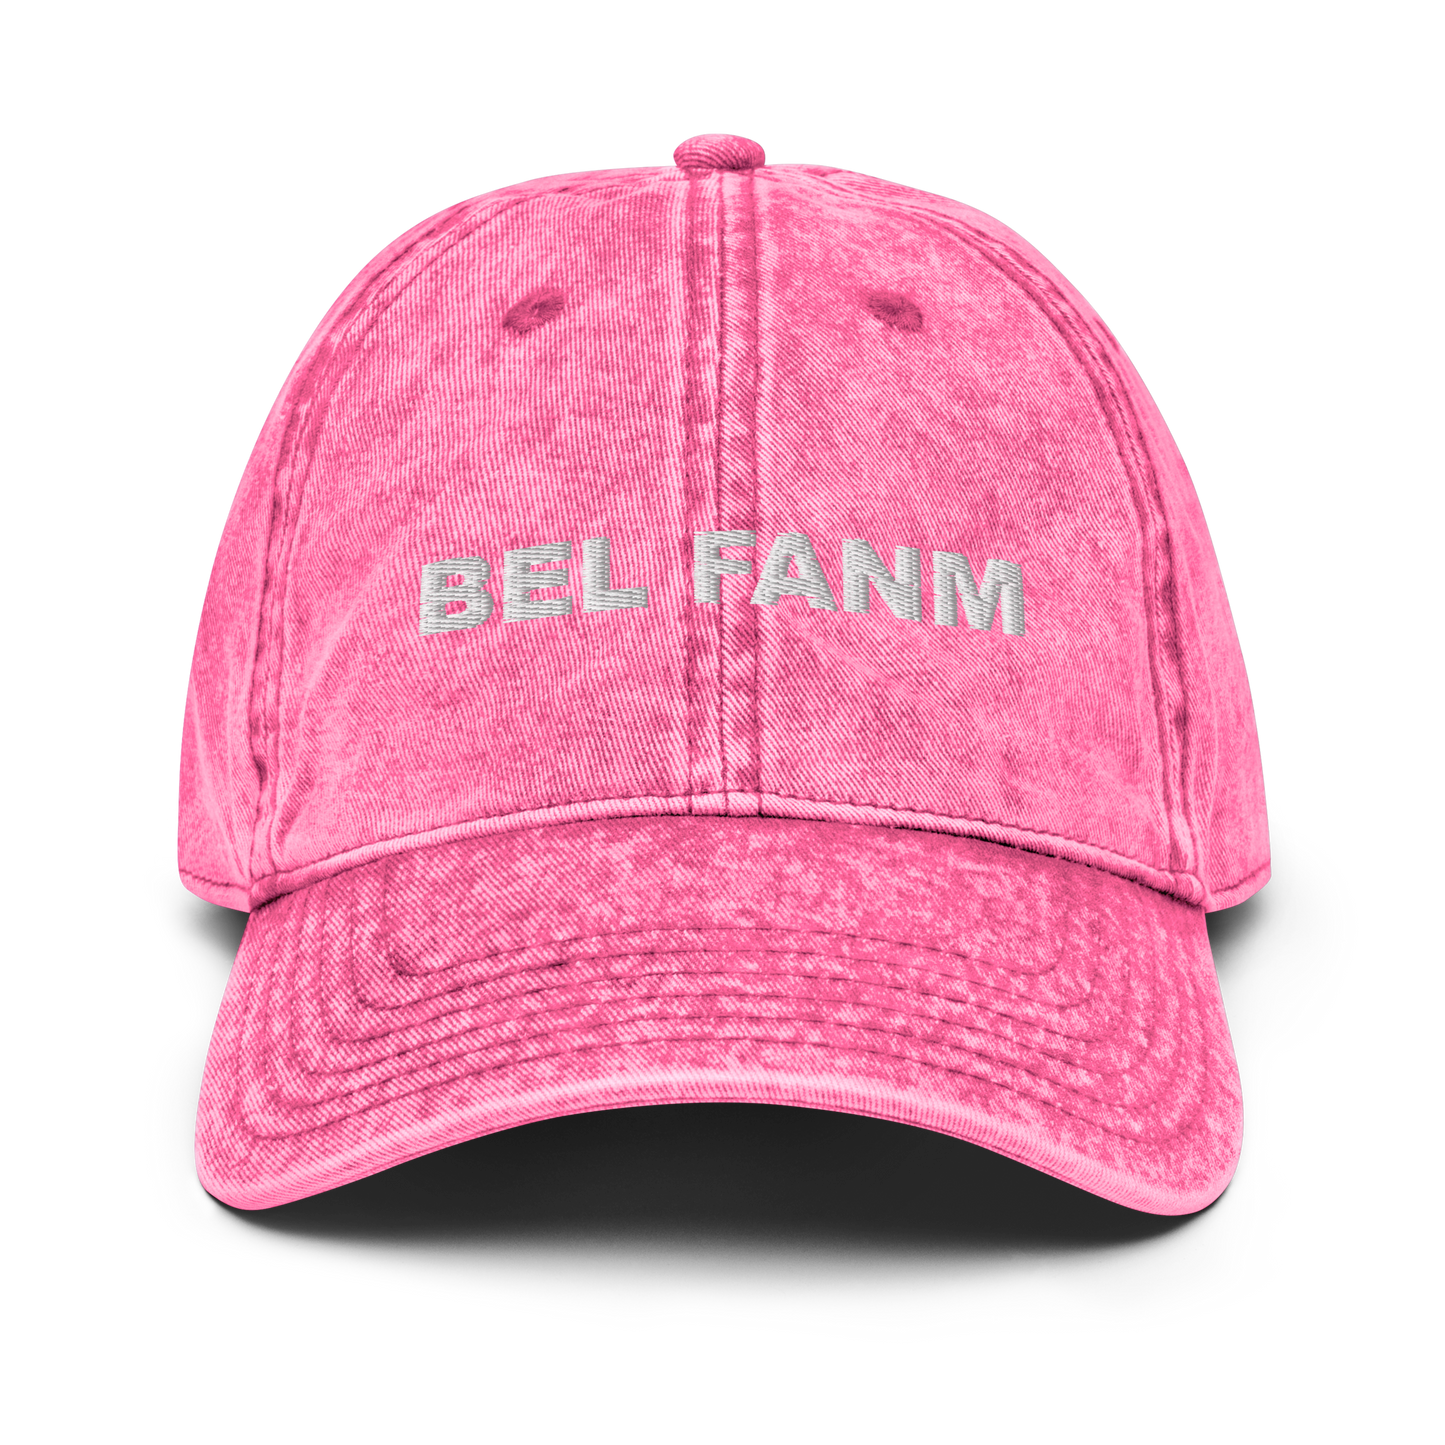 Bel Fanm Vintage Cotton Twill Cap